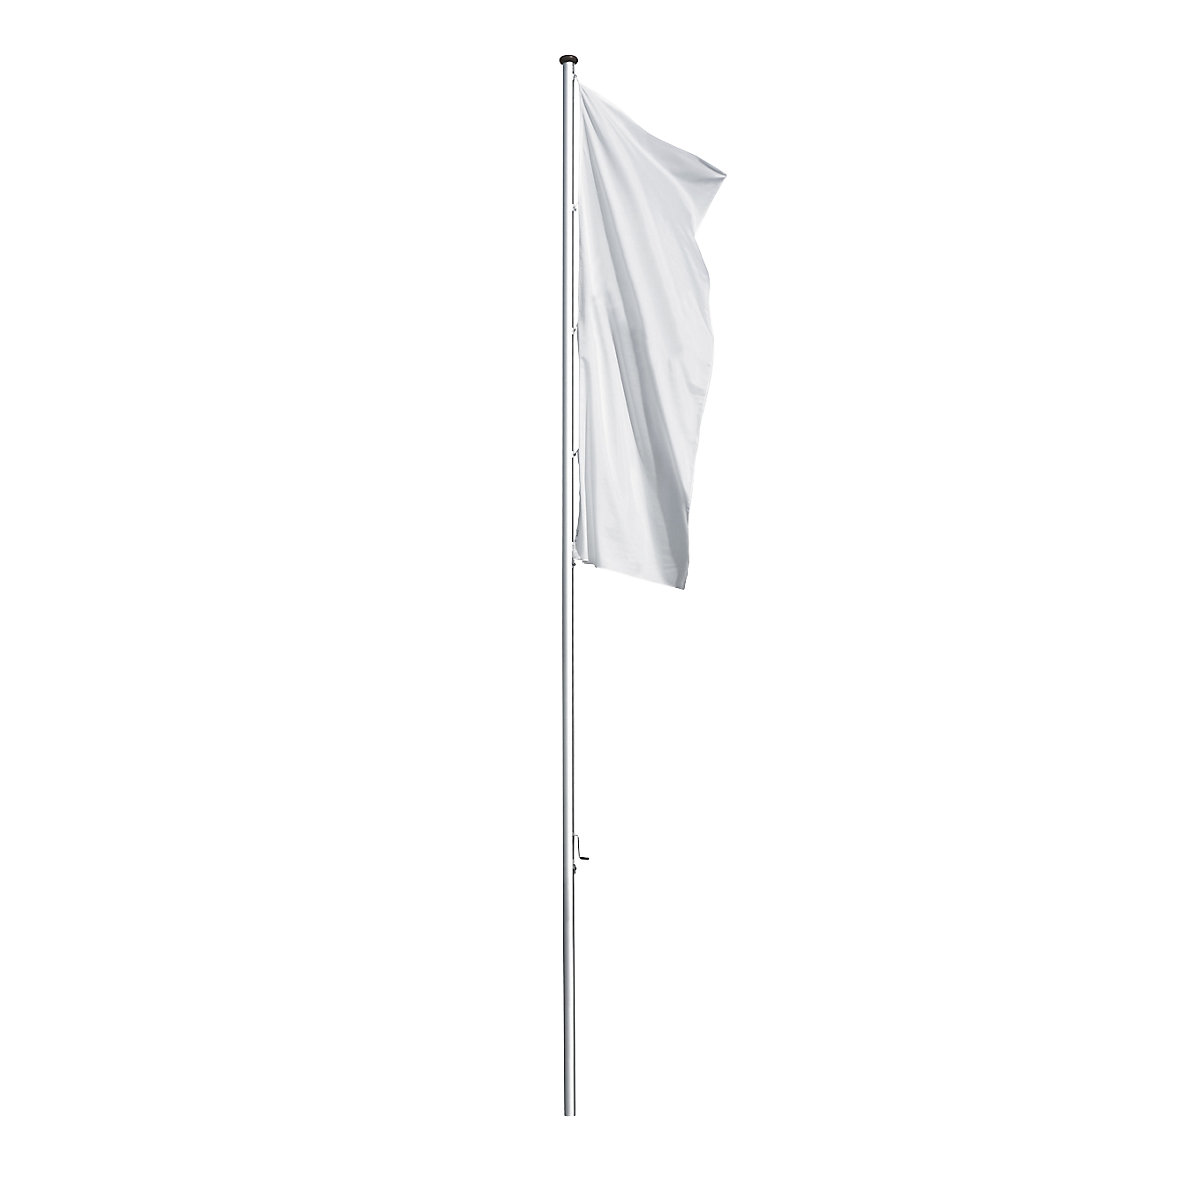 PRESTIGE aluminium flag pole – Mannus